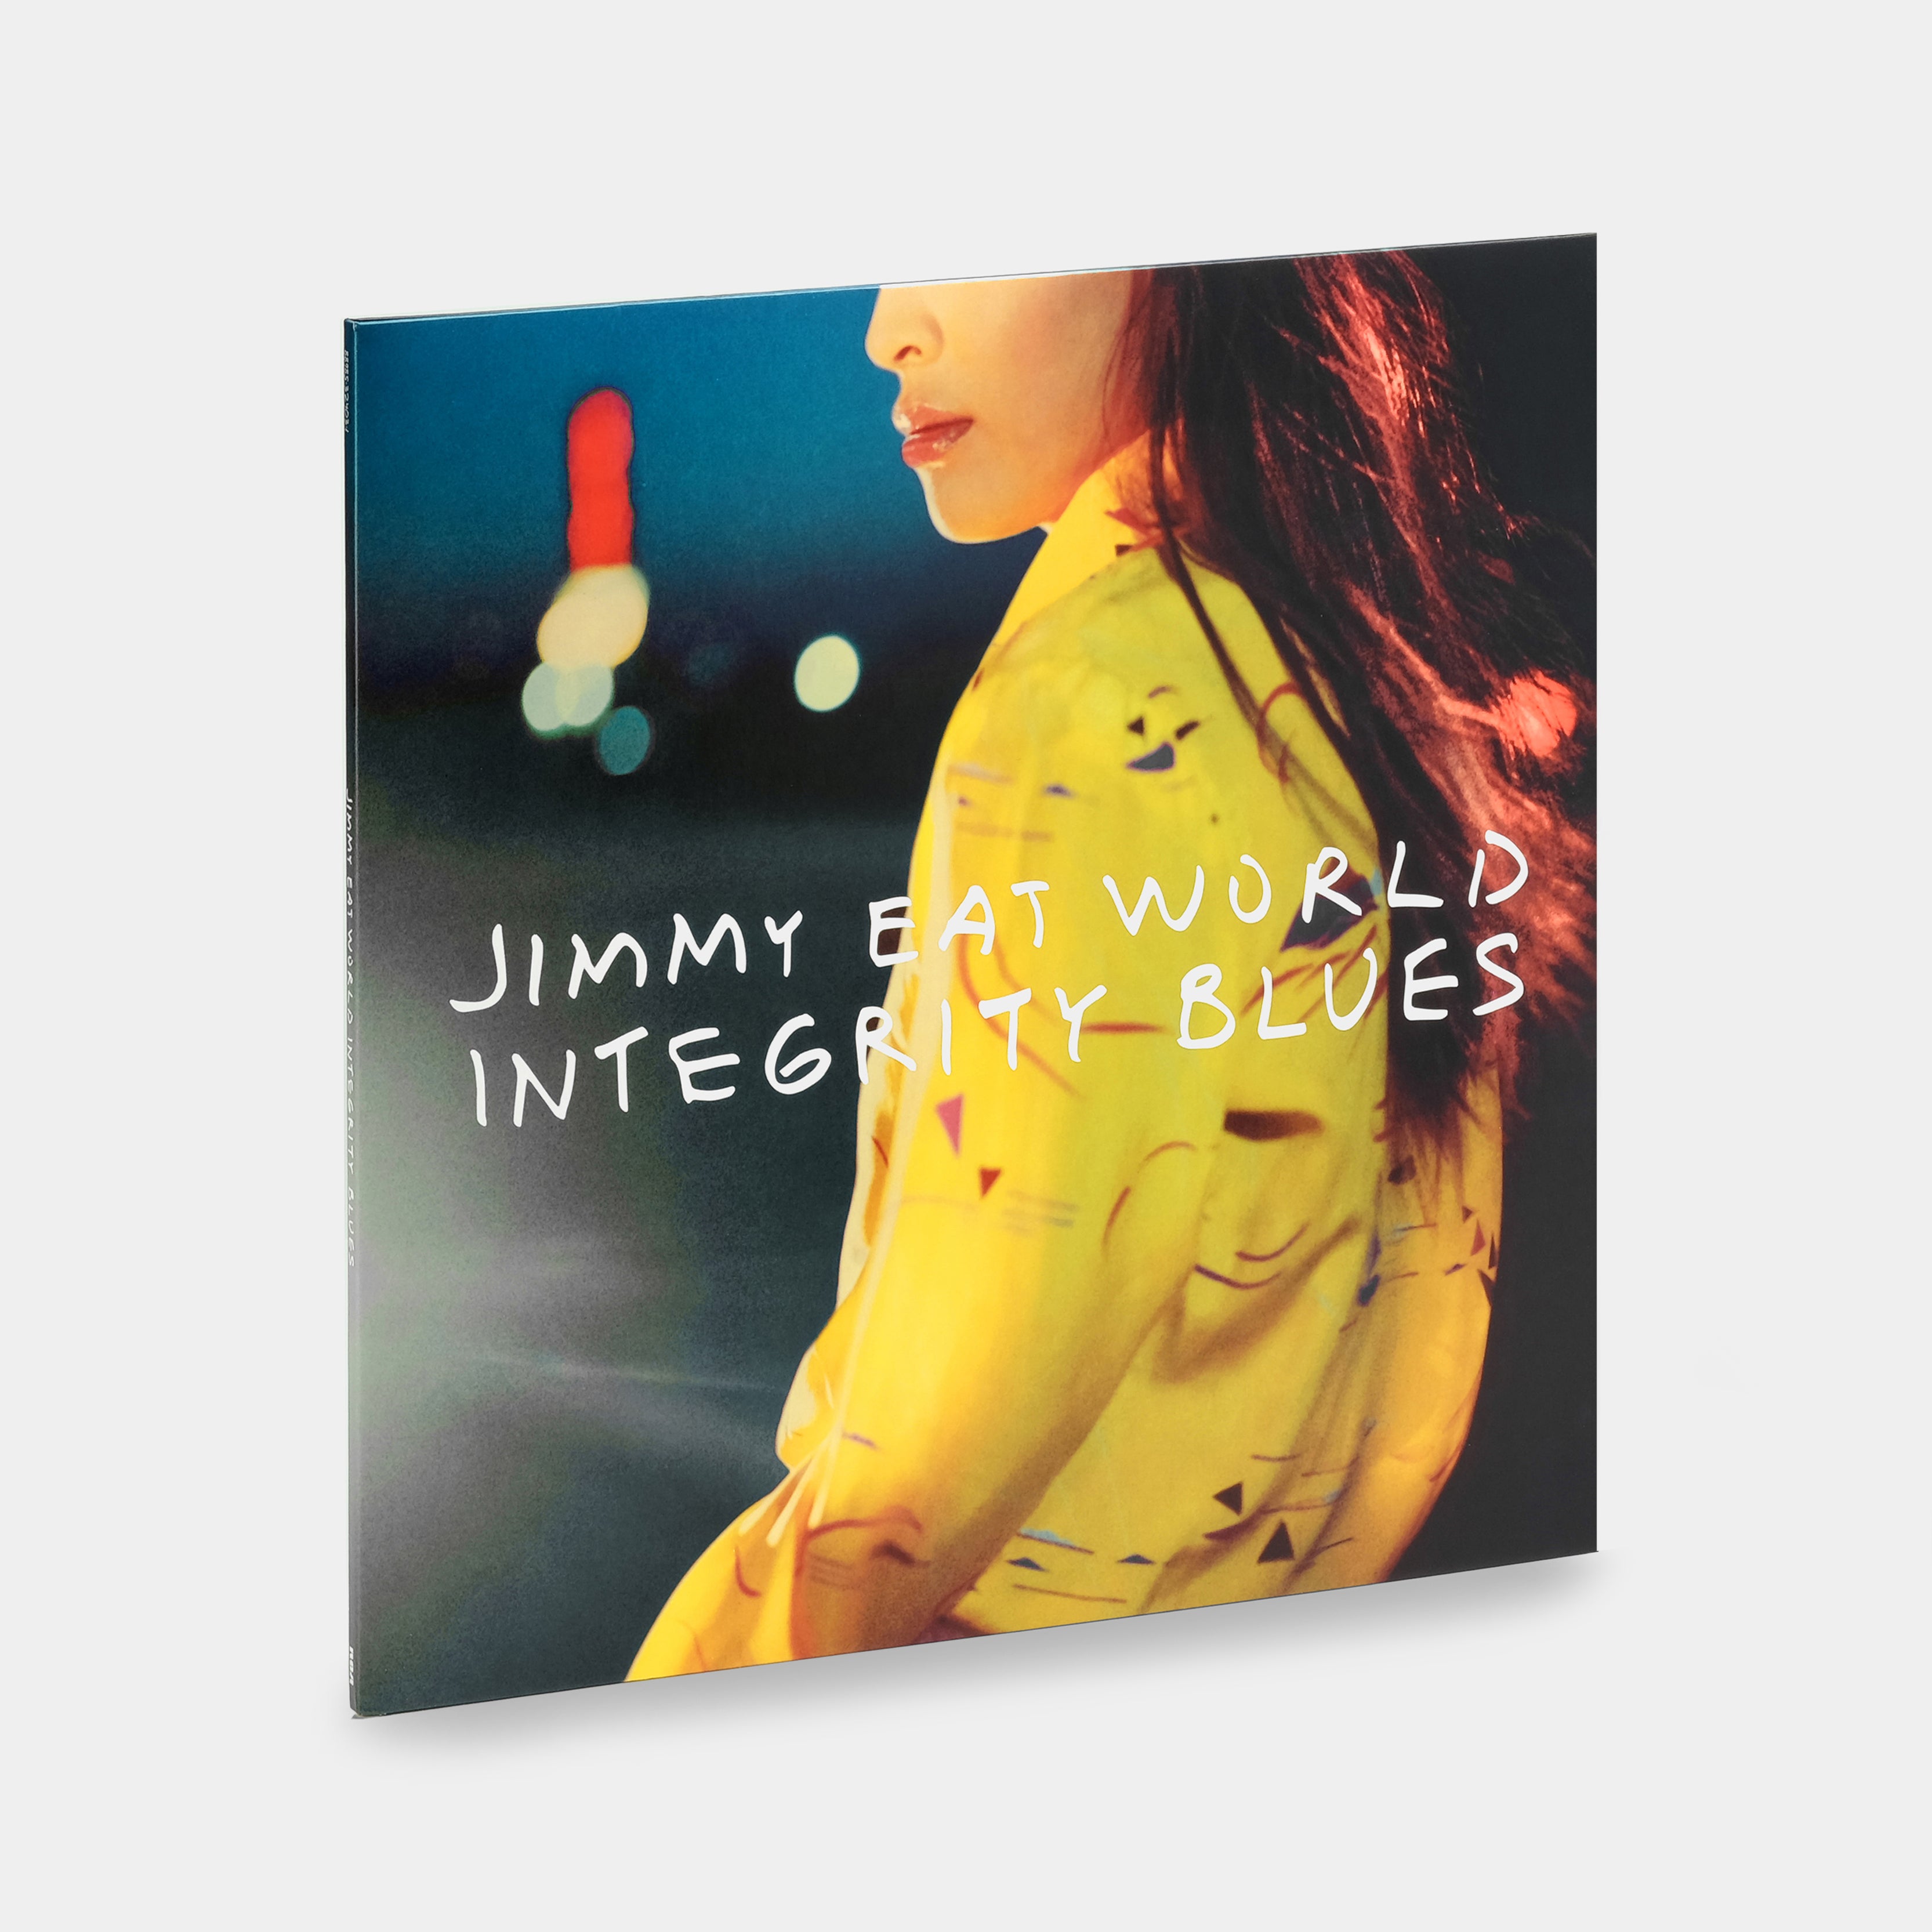 Jimmy Eat World - Integrity Blues LP Vinyl Record